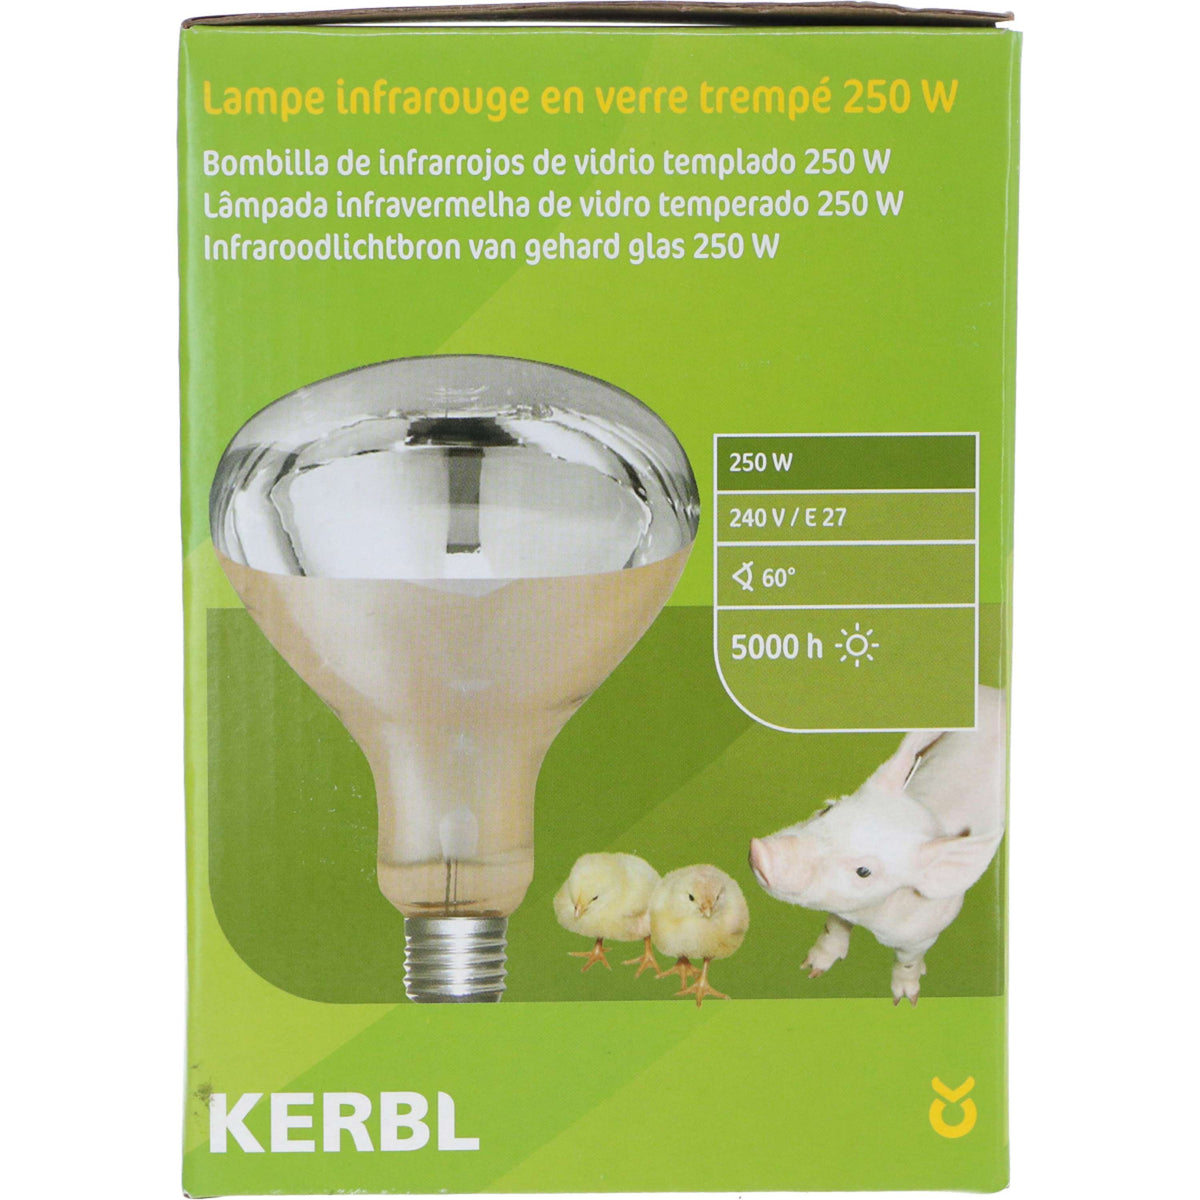 Kerbl Infrarotlampe weiß